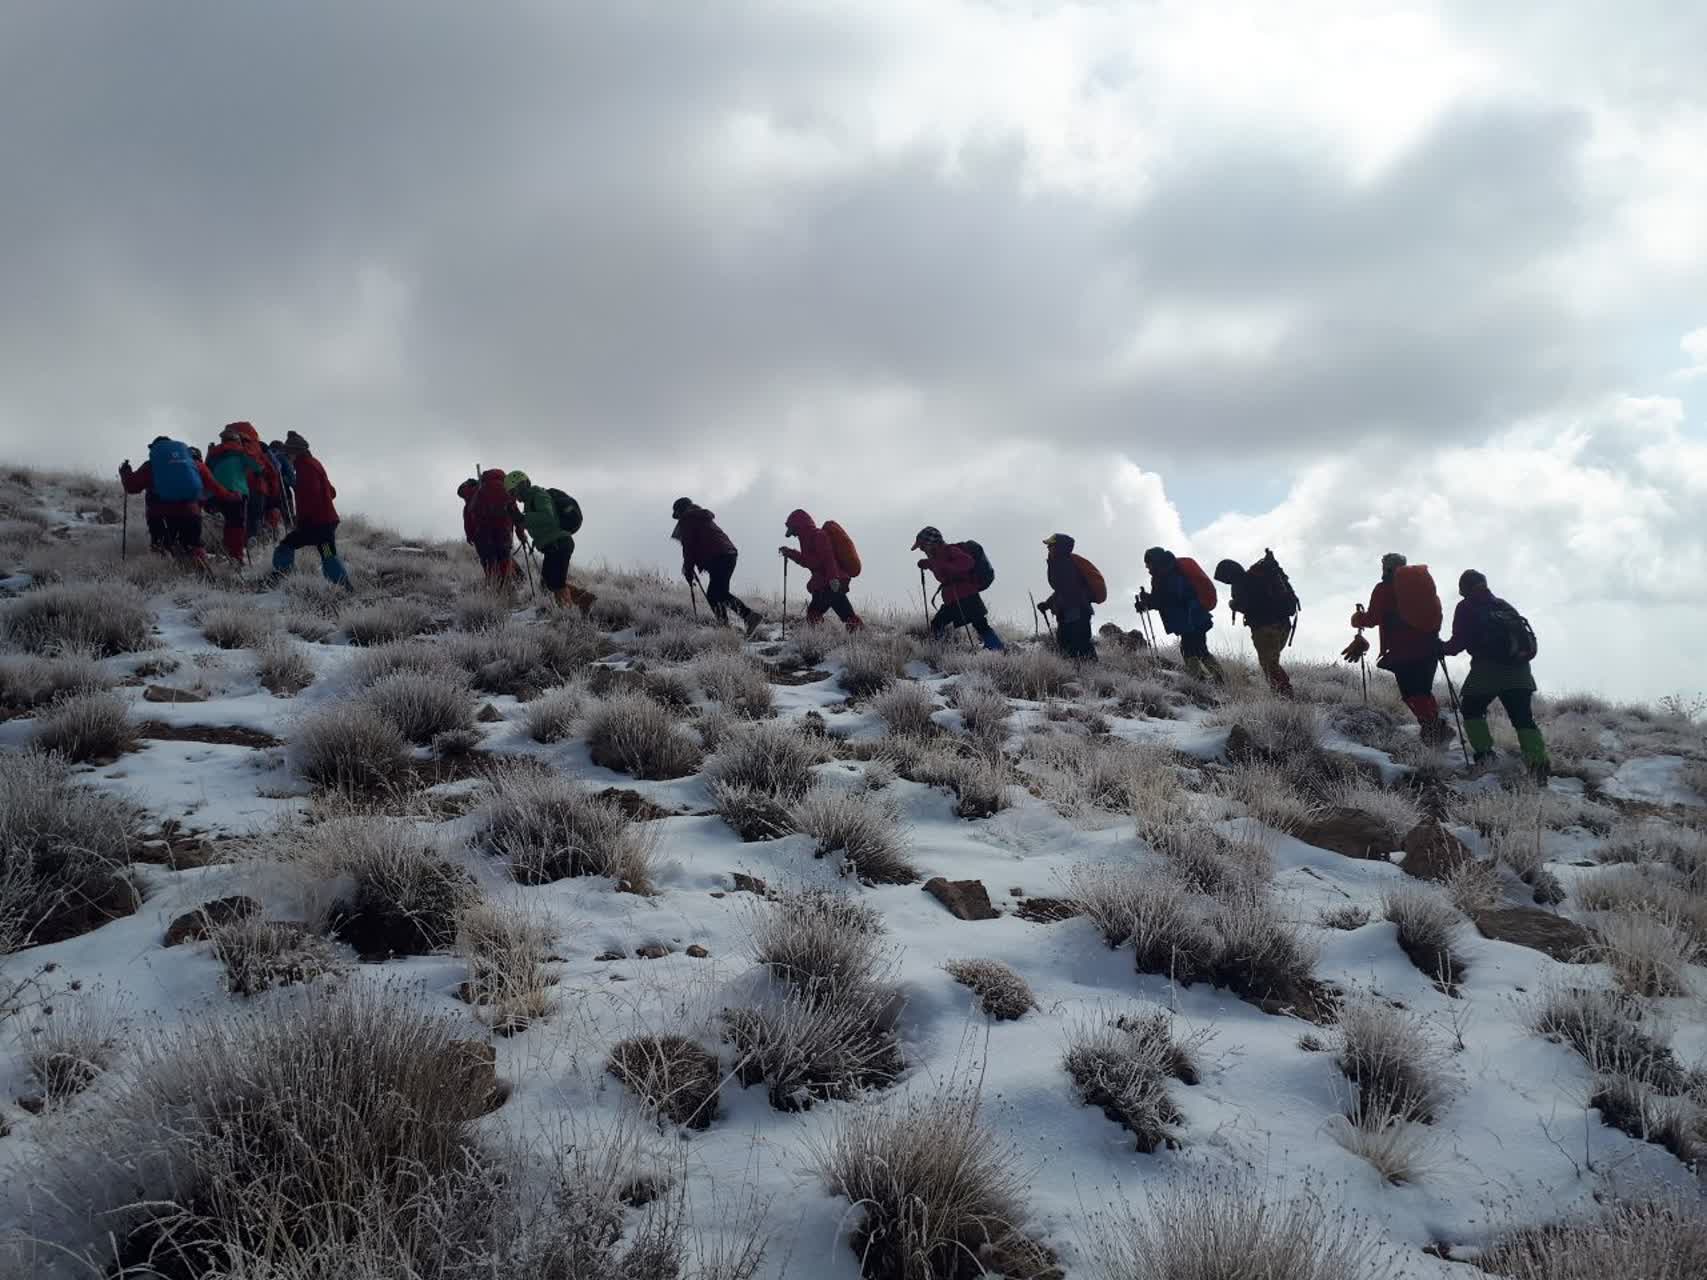 مراحل کوهنوردی | عاشقان طبیعت ایران | به سمت حرفه ای شدن و تجربیات تازه